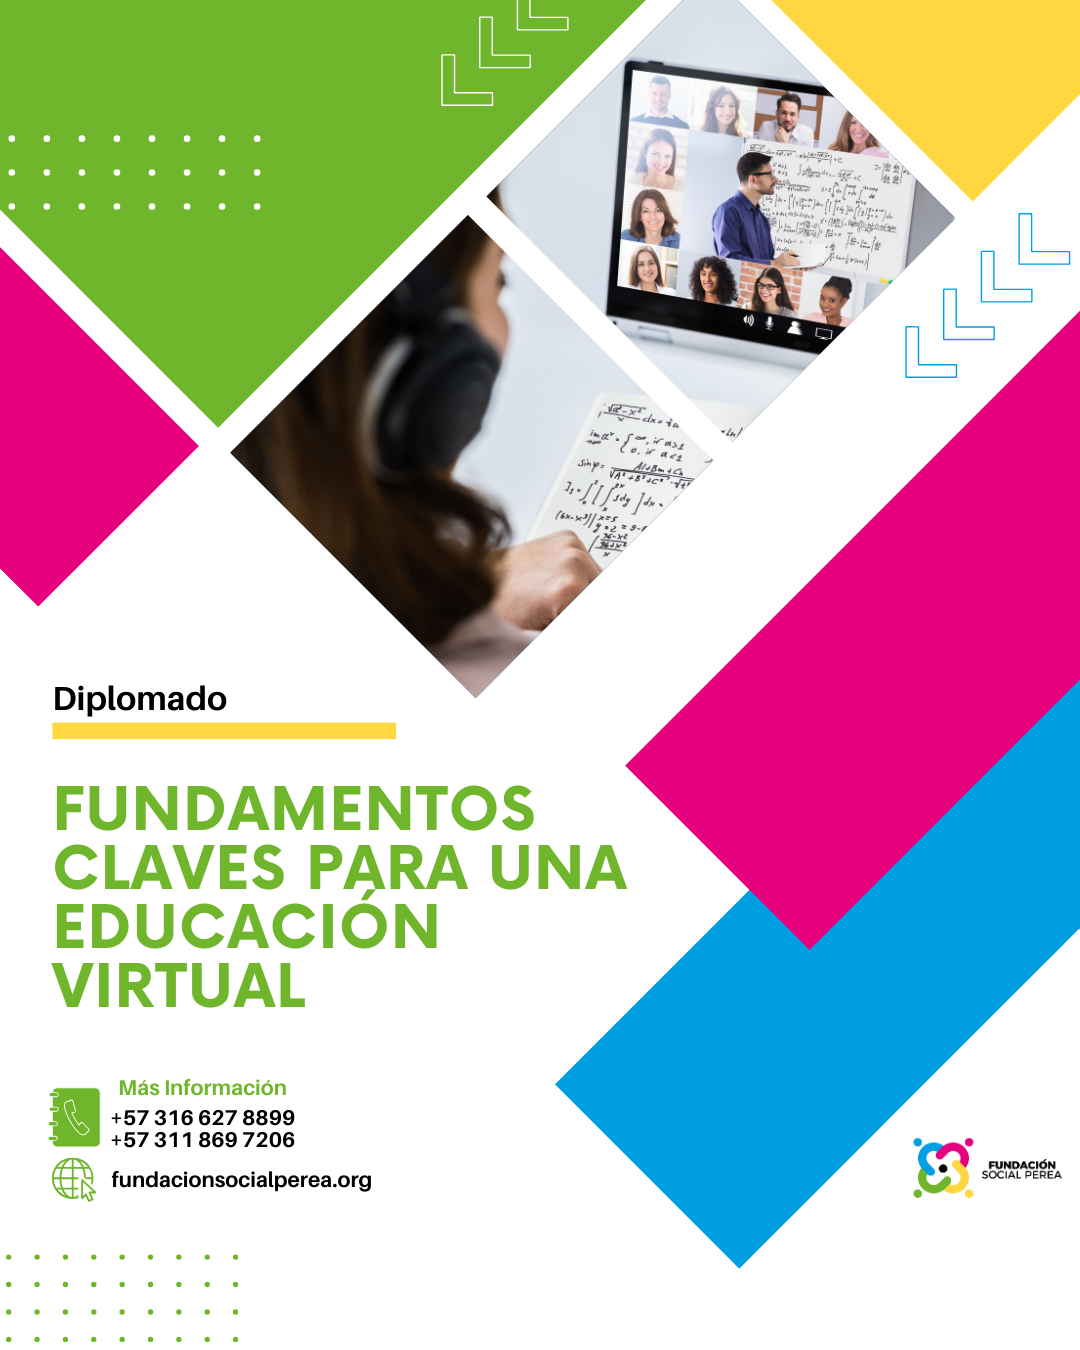 Fundamentos Claves para una Educación Virtual